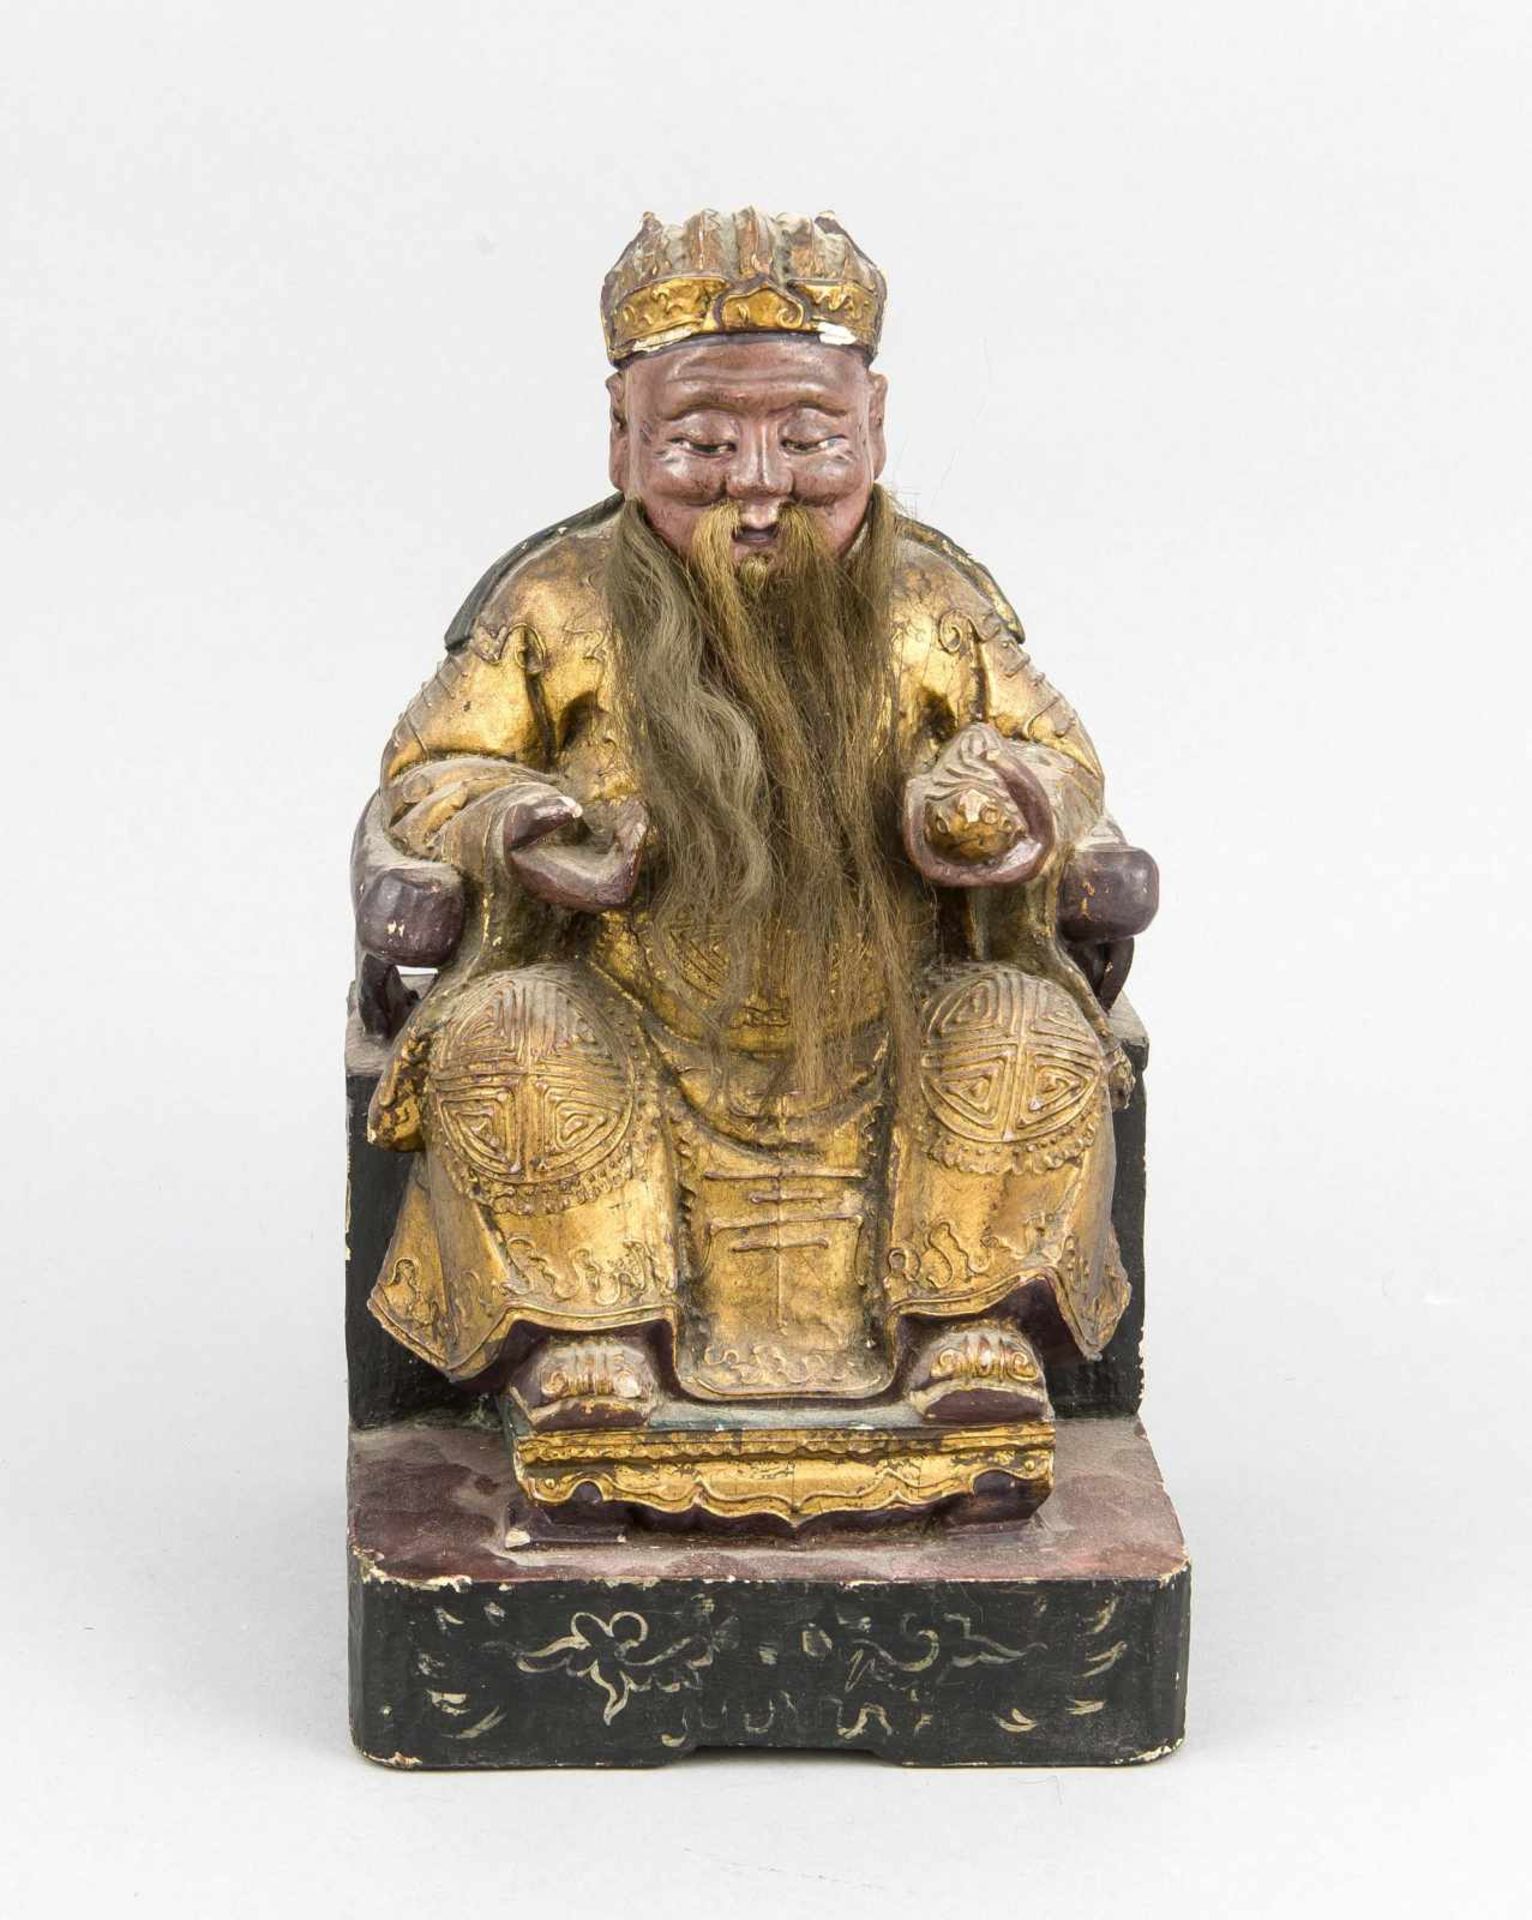 Chinesischer Bildhauer des 19. Jh., Konfuzius auf einem Stuhl sitzend, vollplastisch geschnitzte